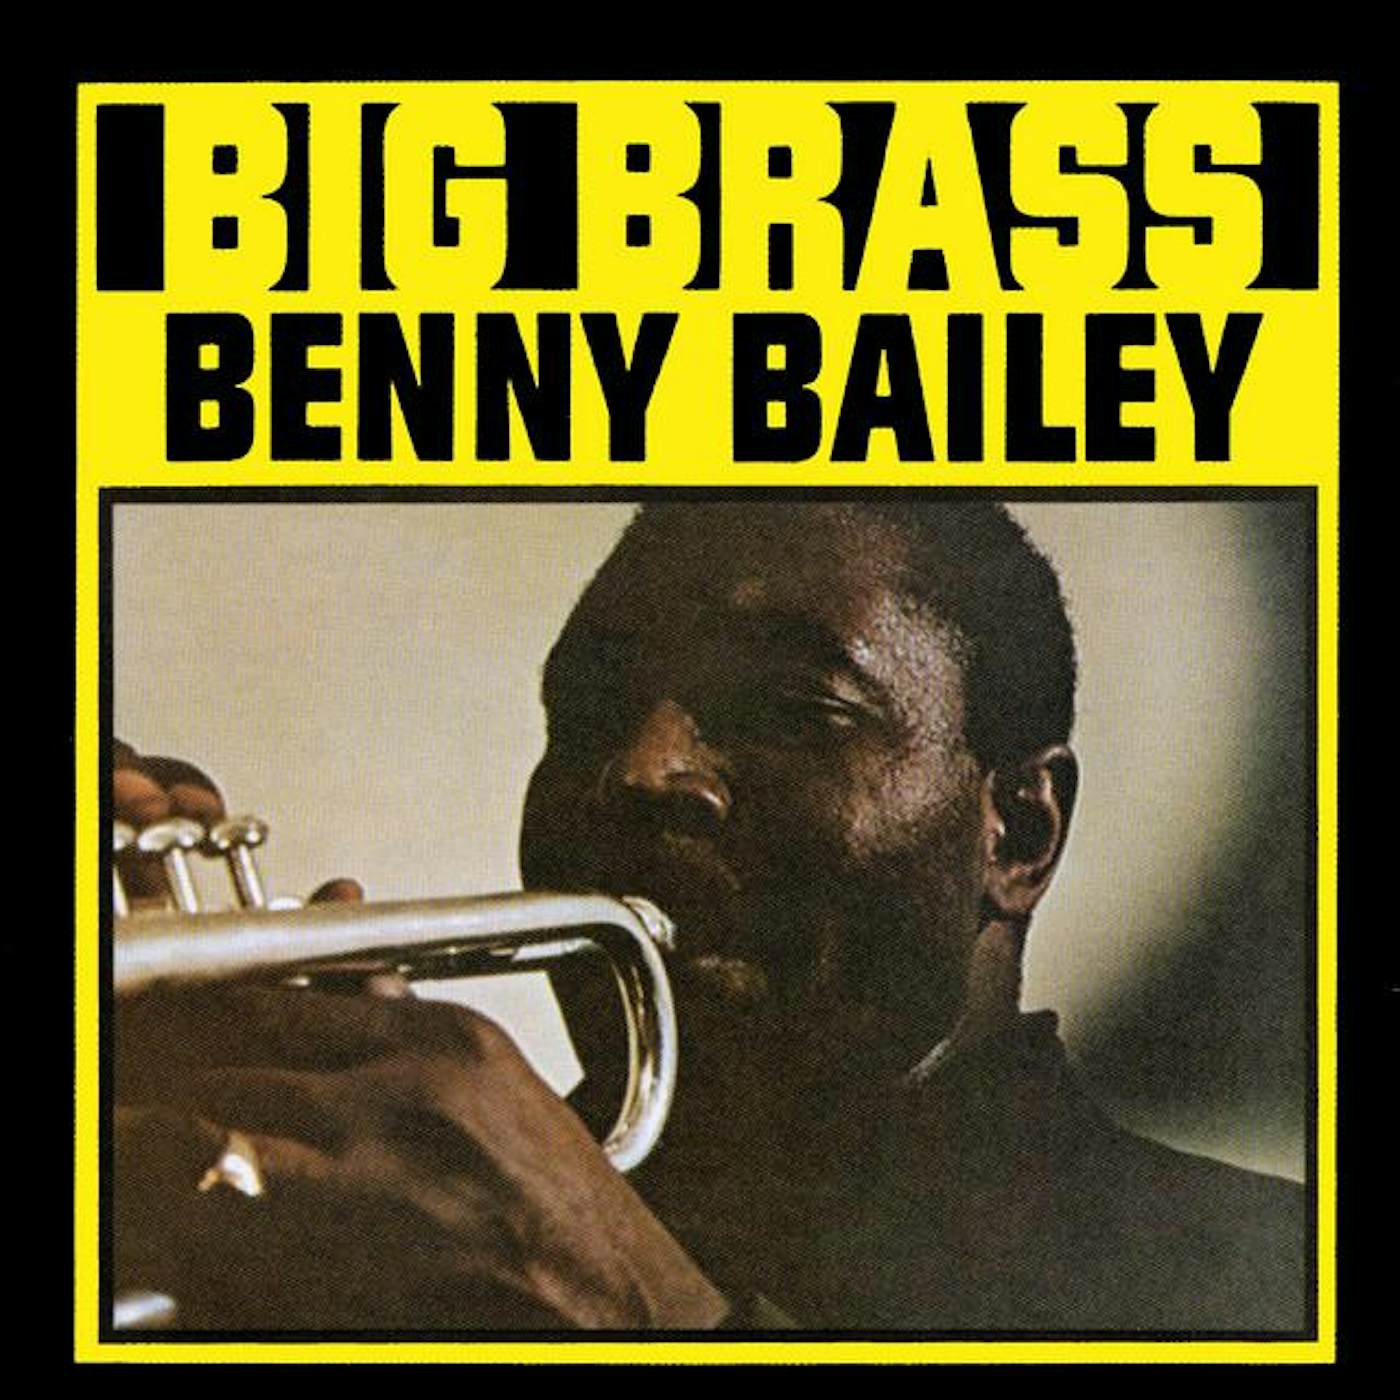 Benny Bailey